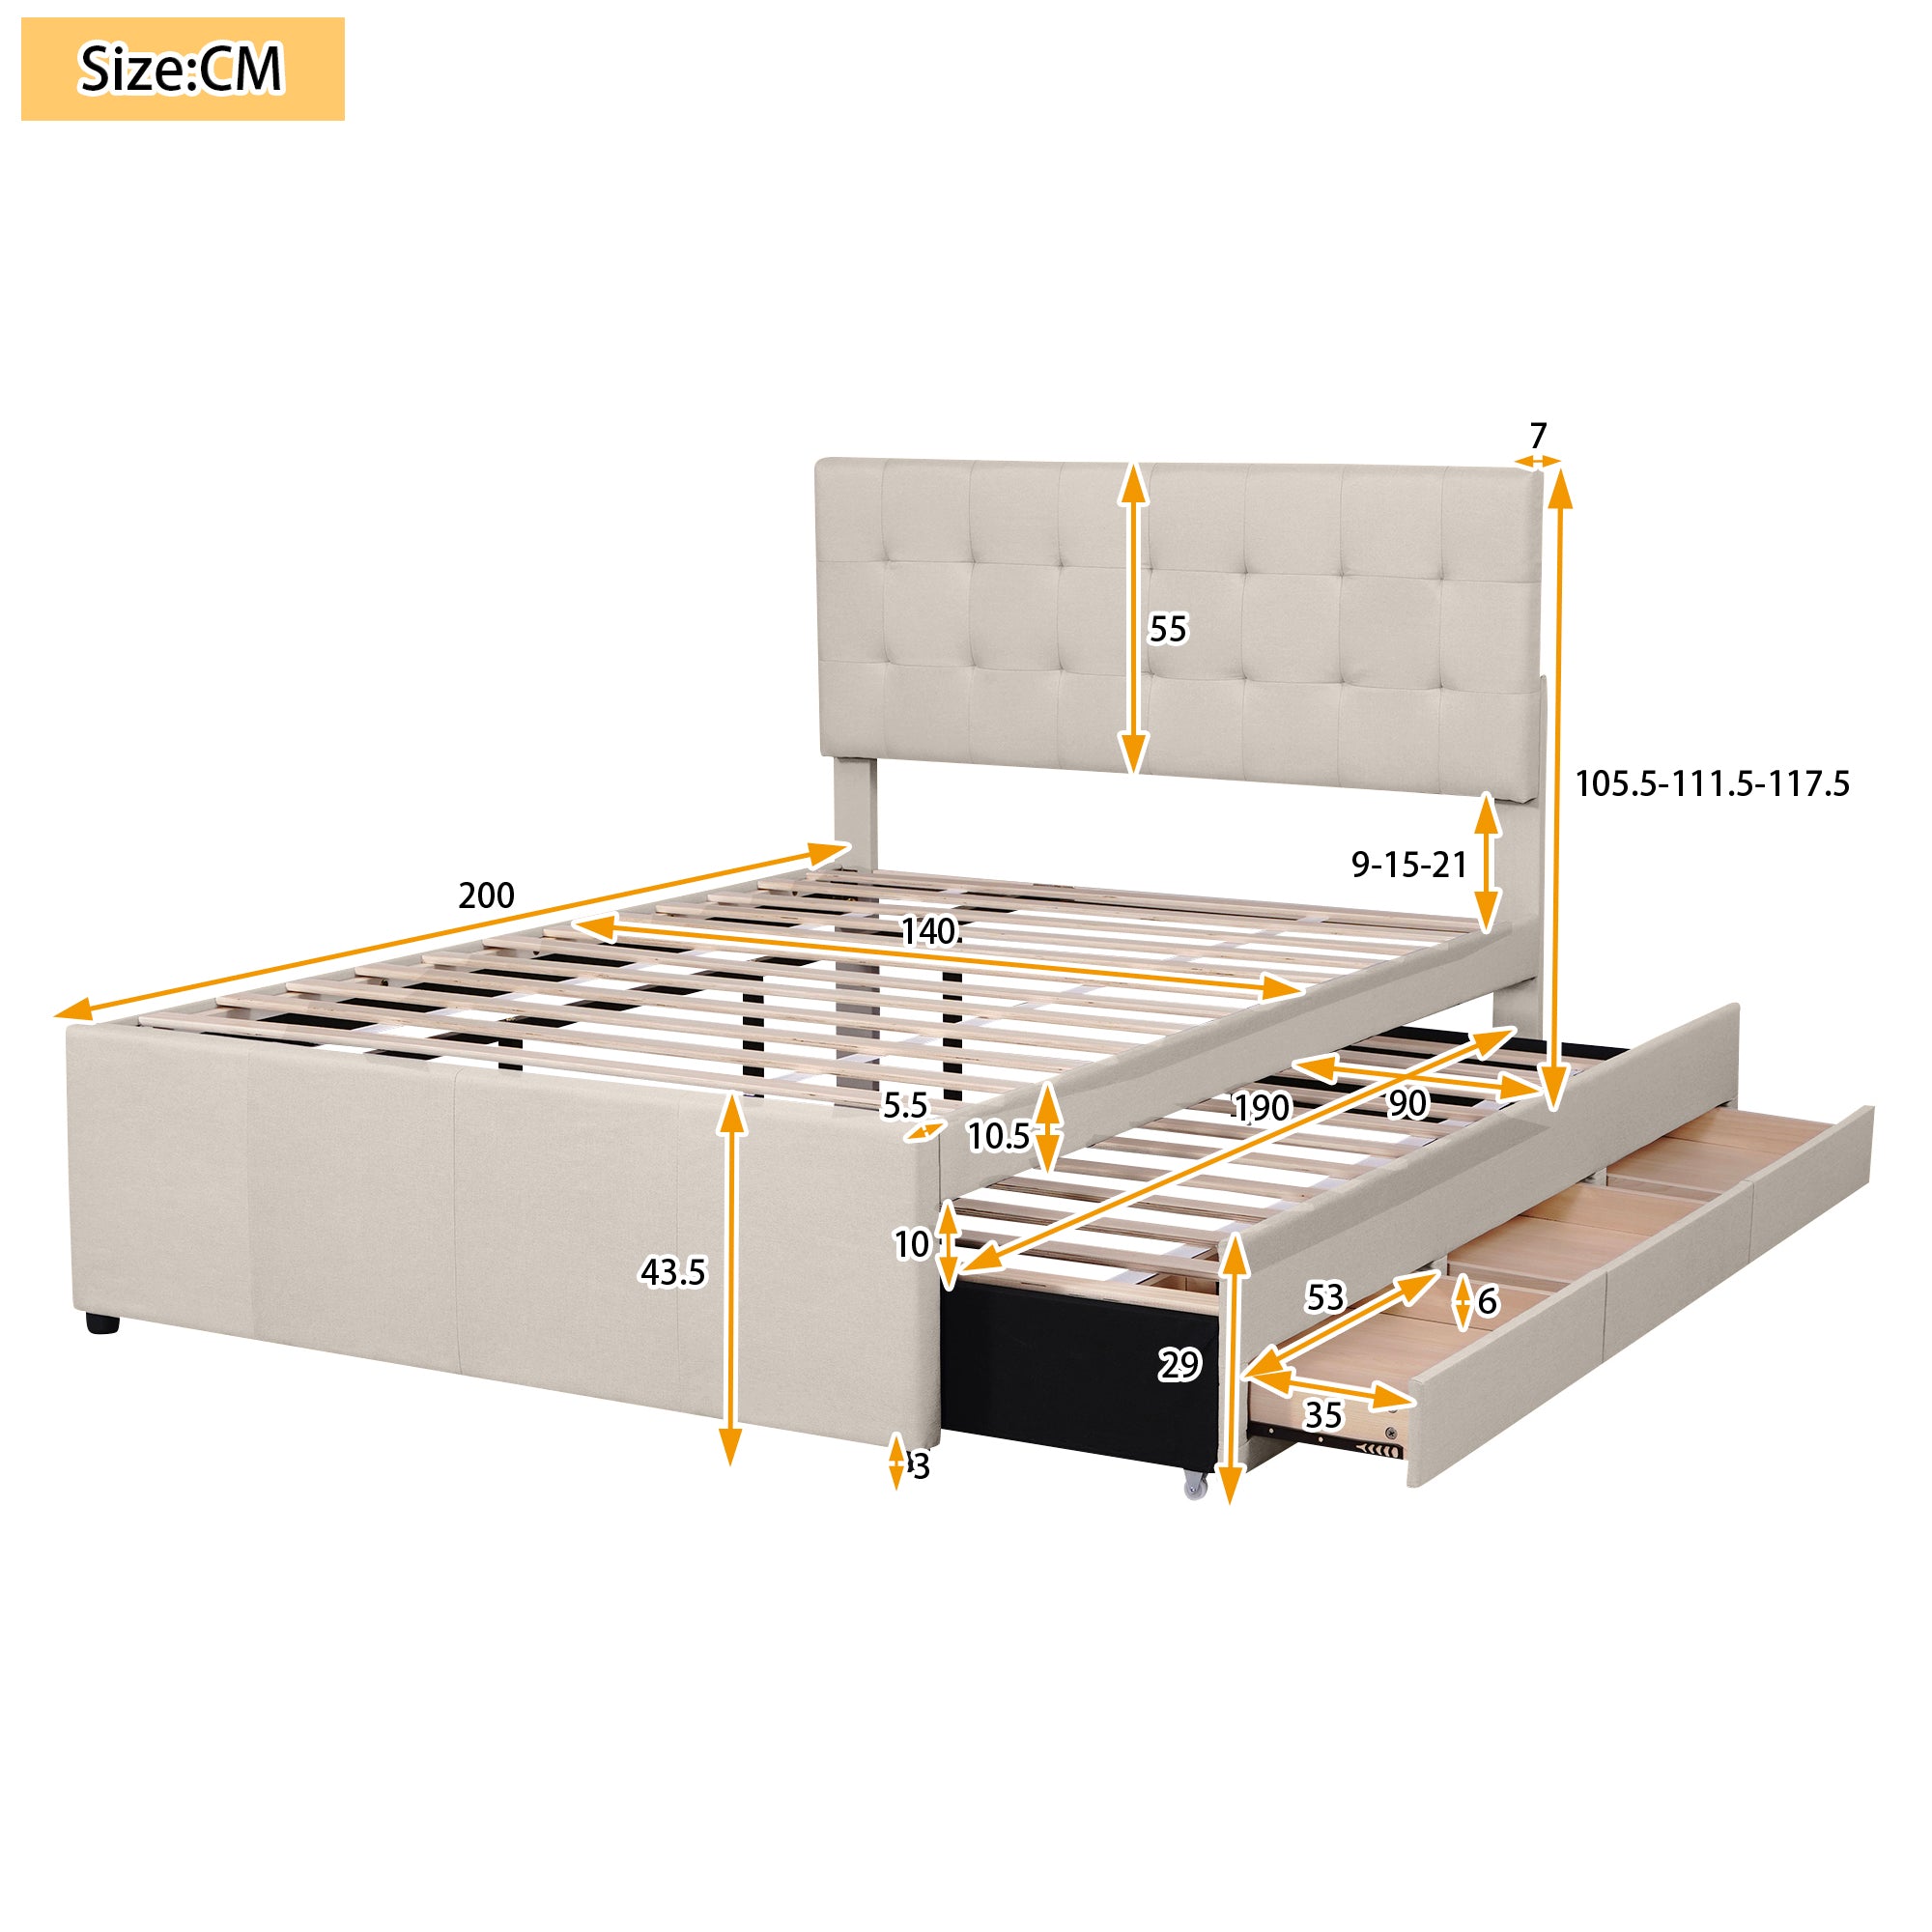 Polsterbett 140x200cm Doppelbett, Familienbett Bett mit drei Schubladen, ausziehbares Bett, Verstellbares Kopfteil, Leinen Beige